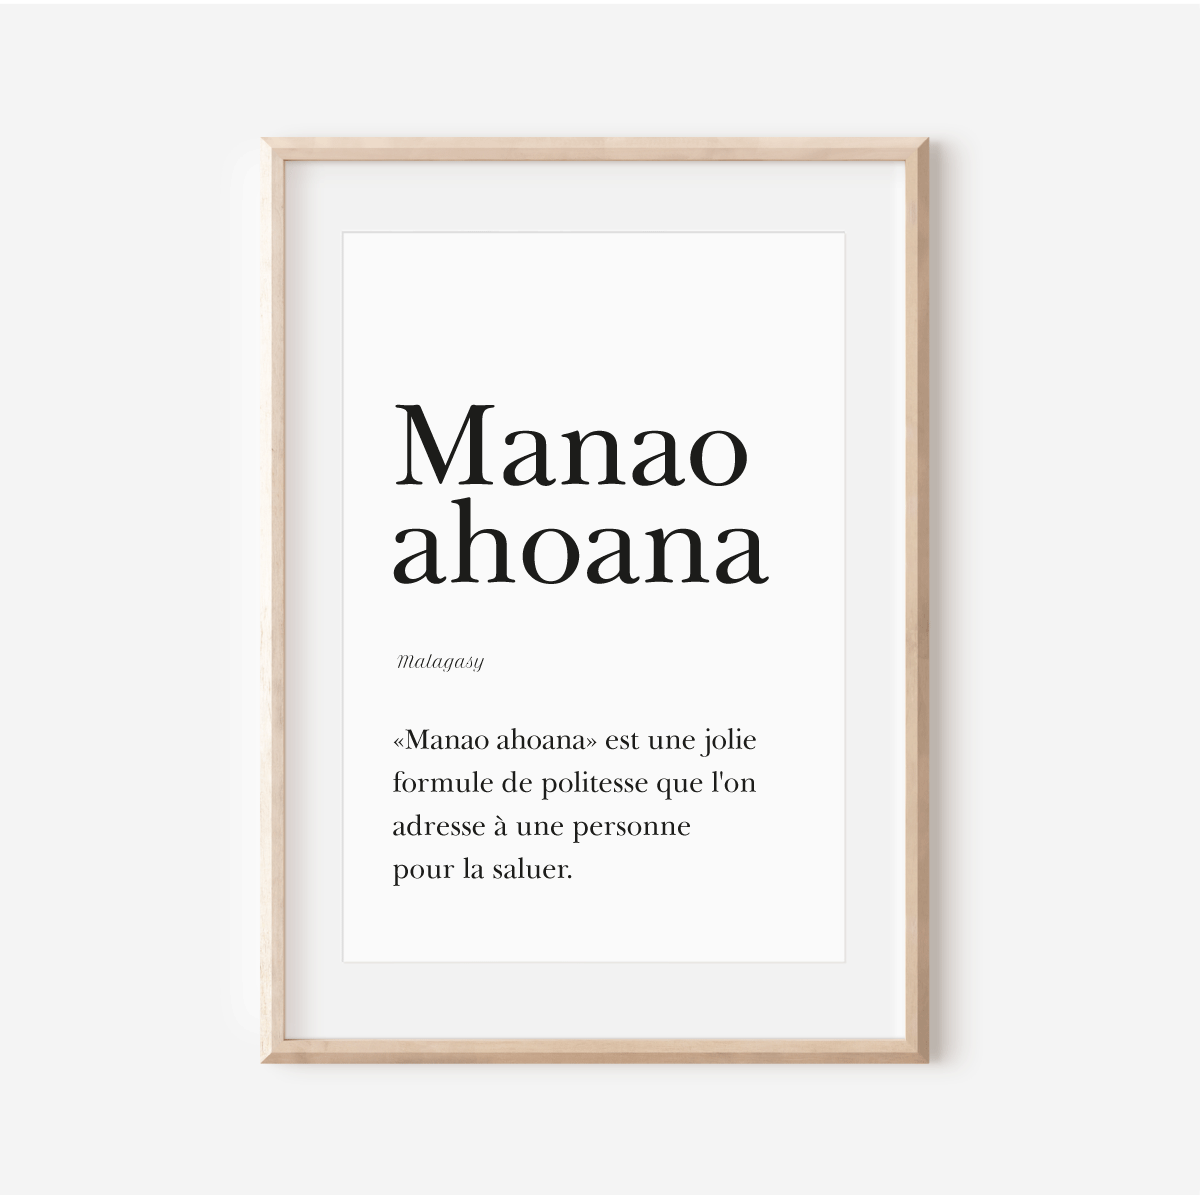 "Manao ahoana" Poster  - Good Morning in Malagasy